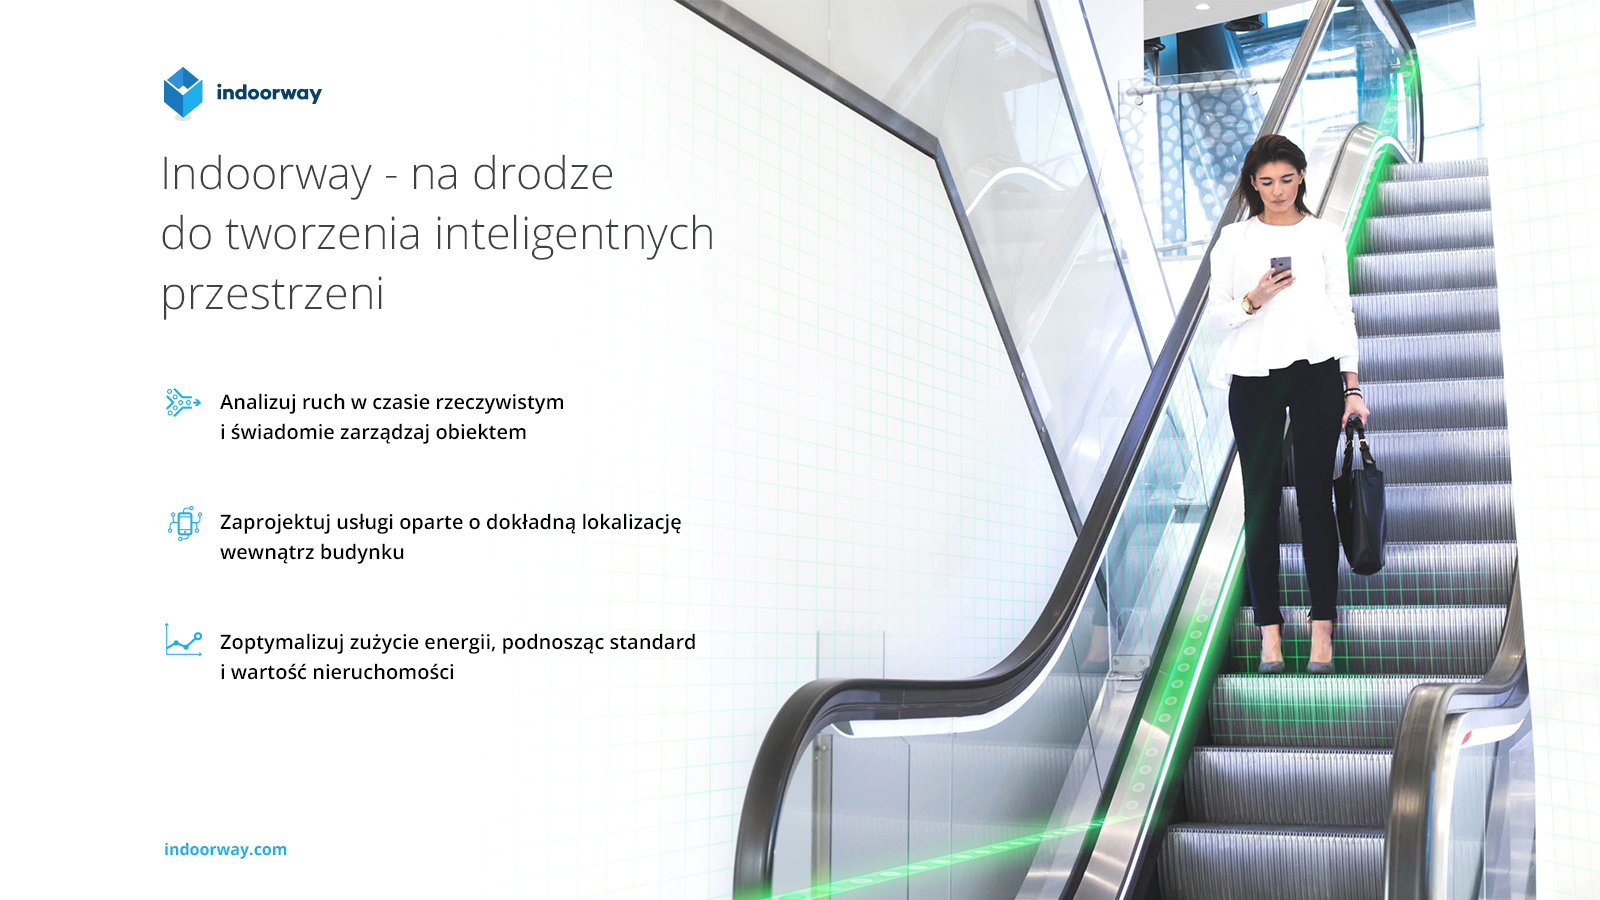 Indoorway zmieni każdy budynek w inteligentną przestrzeń Nowyoutsourcing.pl